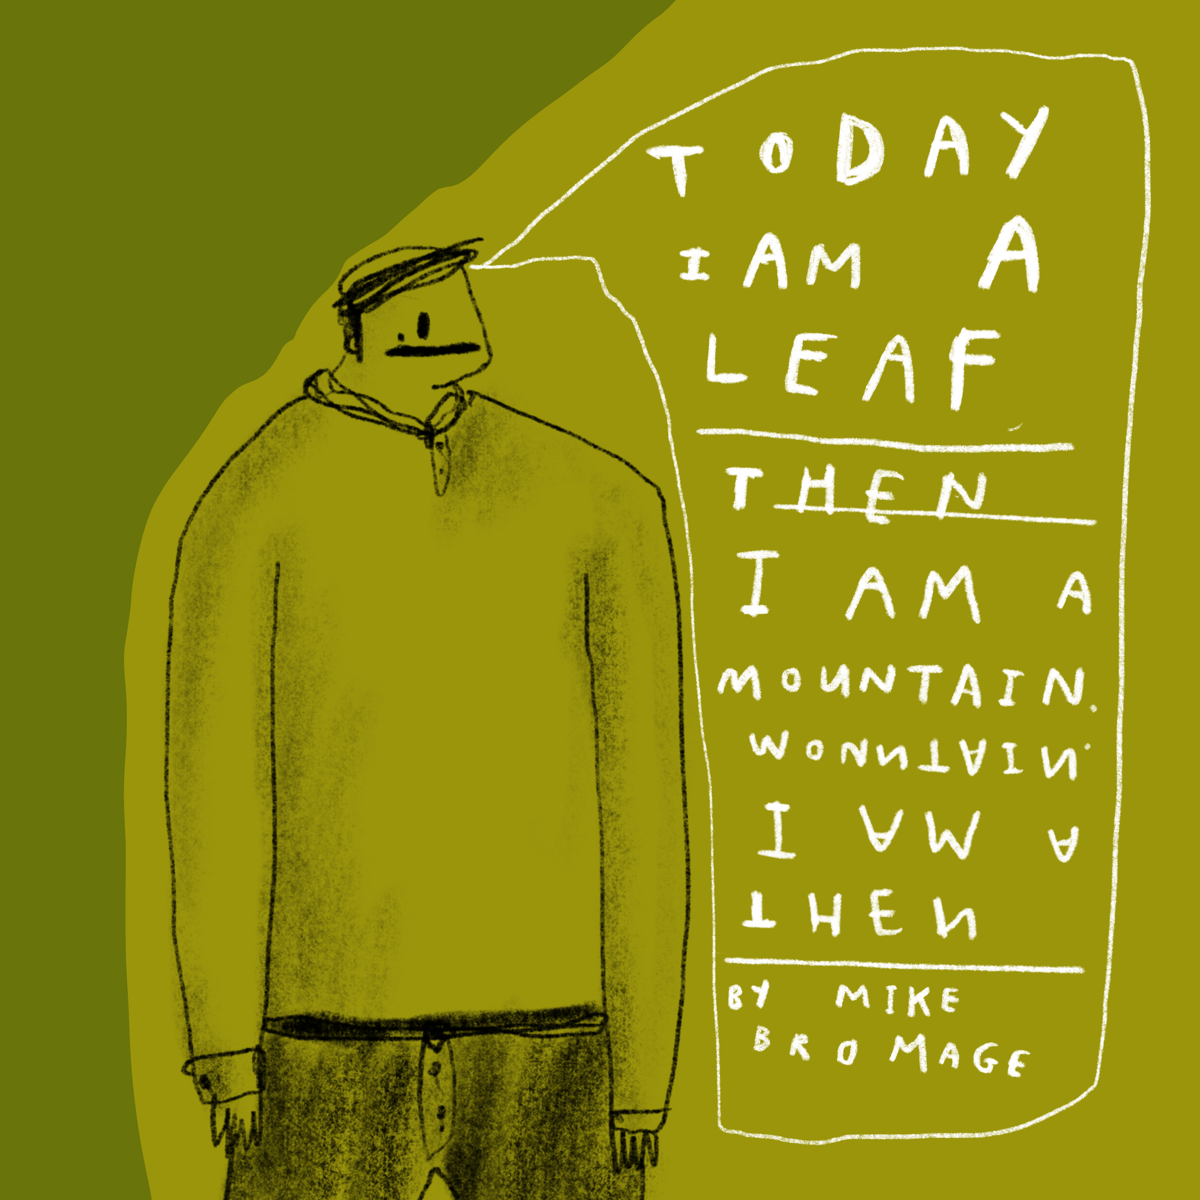 Today I am a leaf (comic)